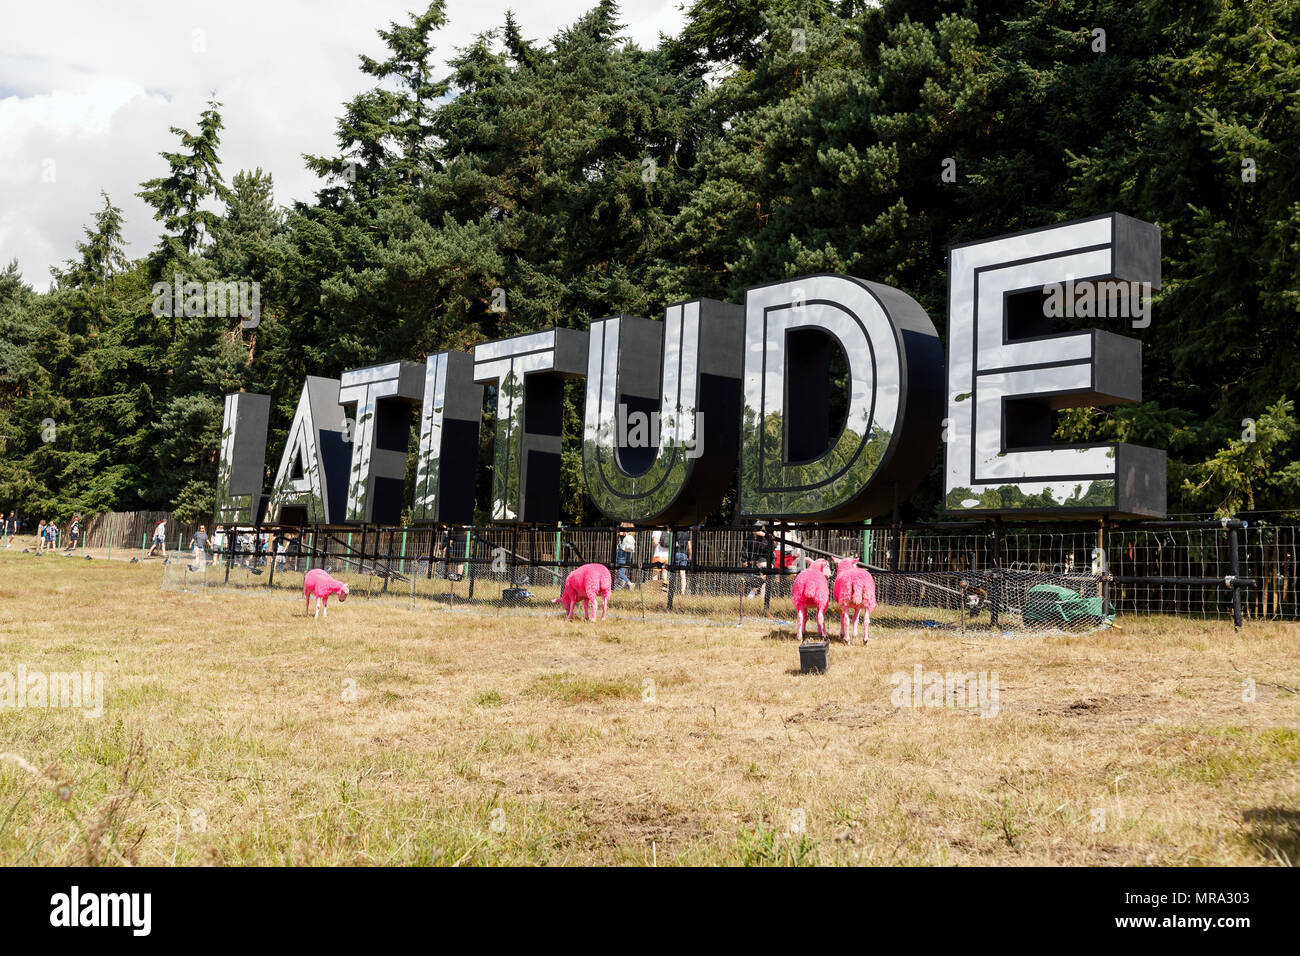 Il notebook Latitude Festival segno a Henham Park, Suffolk, Regno Unito durante il 2017 evento. Attorno al logo sono il festival iconici tinte di rosa pecore. Foto Stock